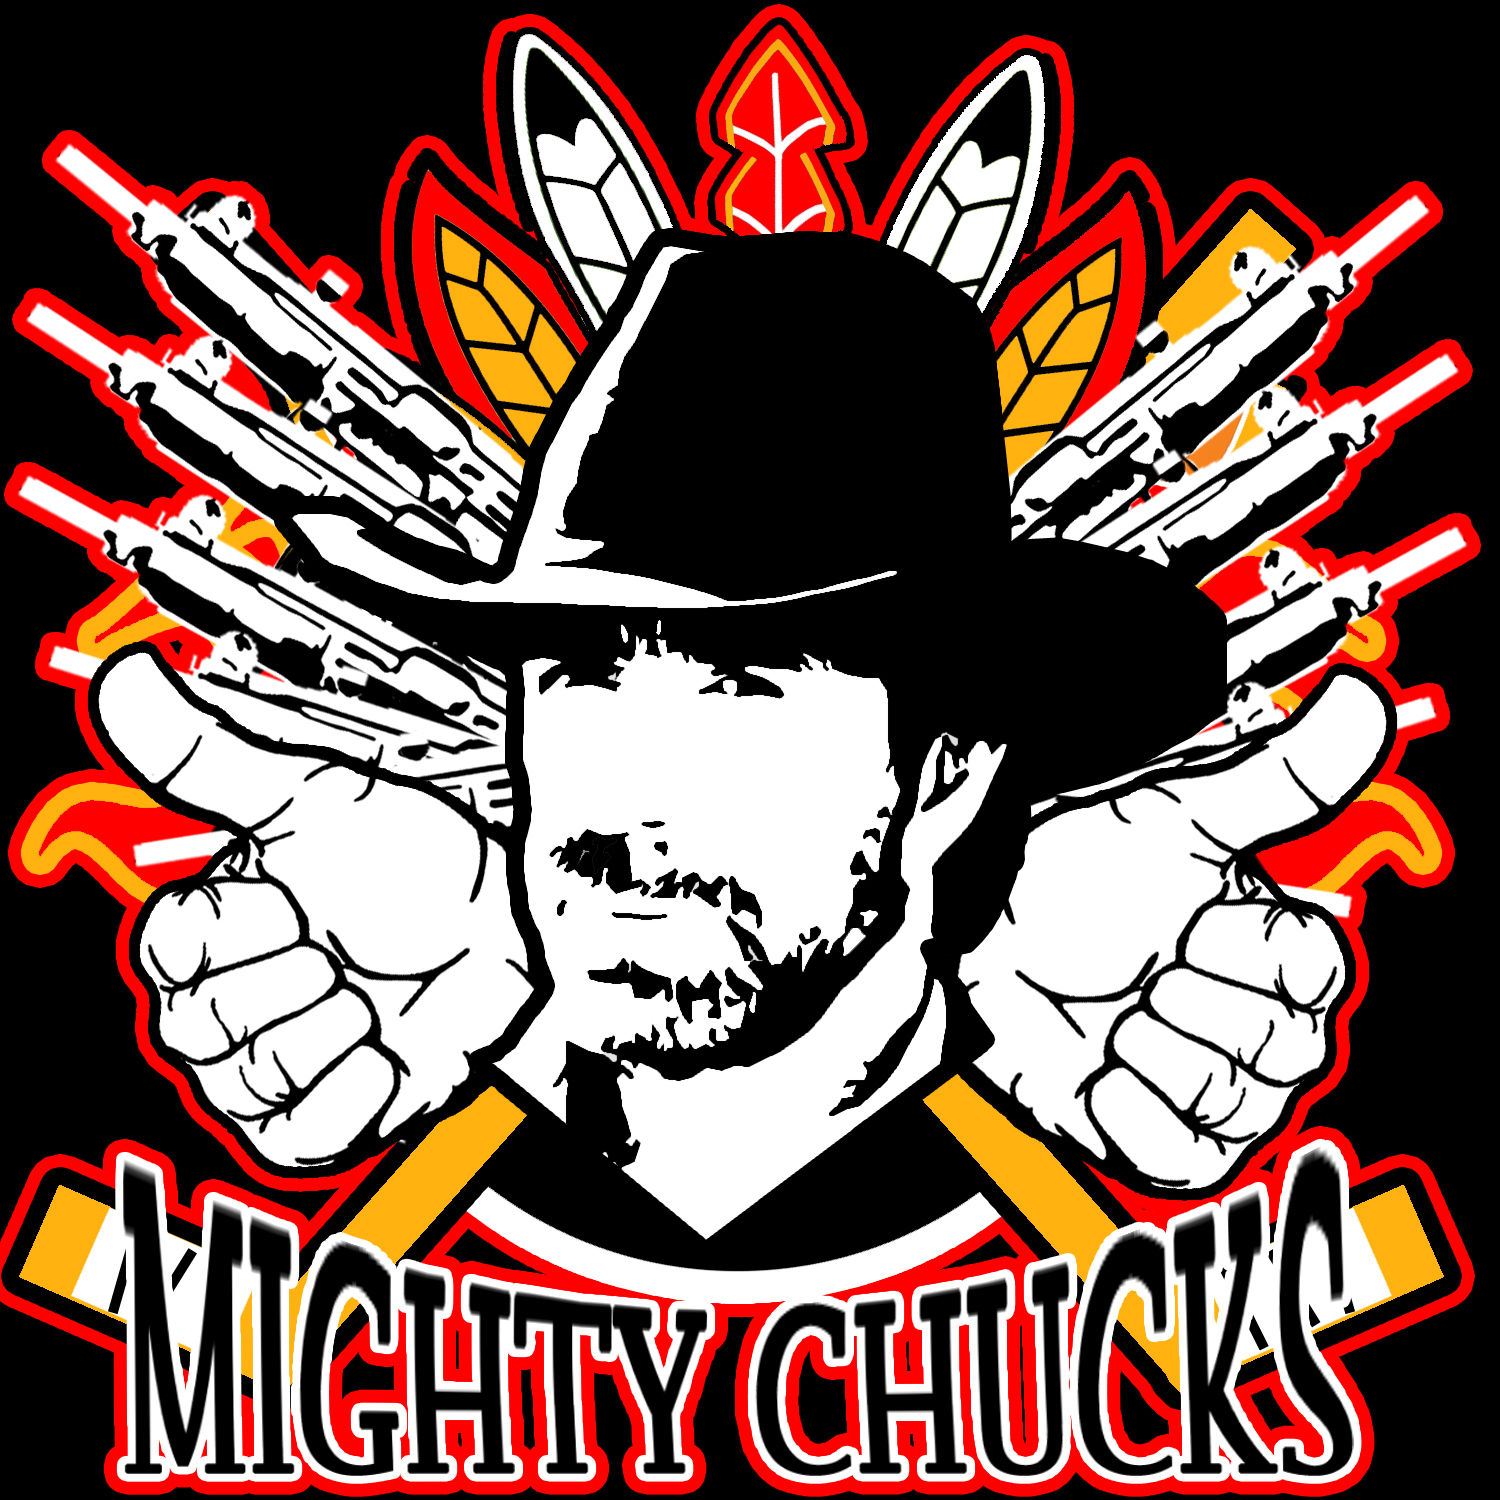  Mighty chucks